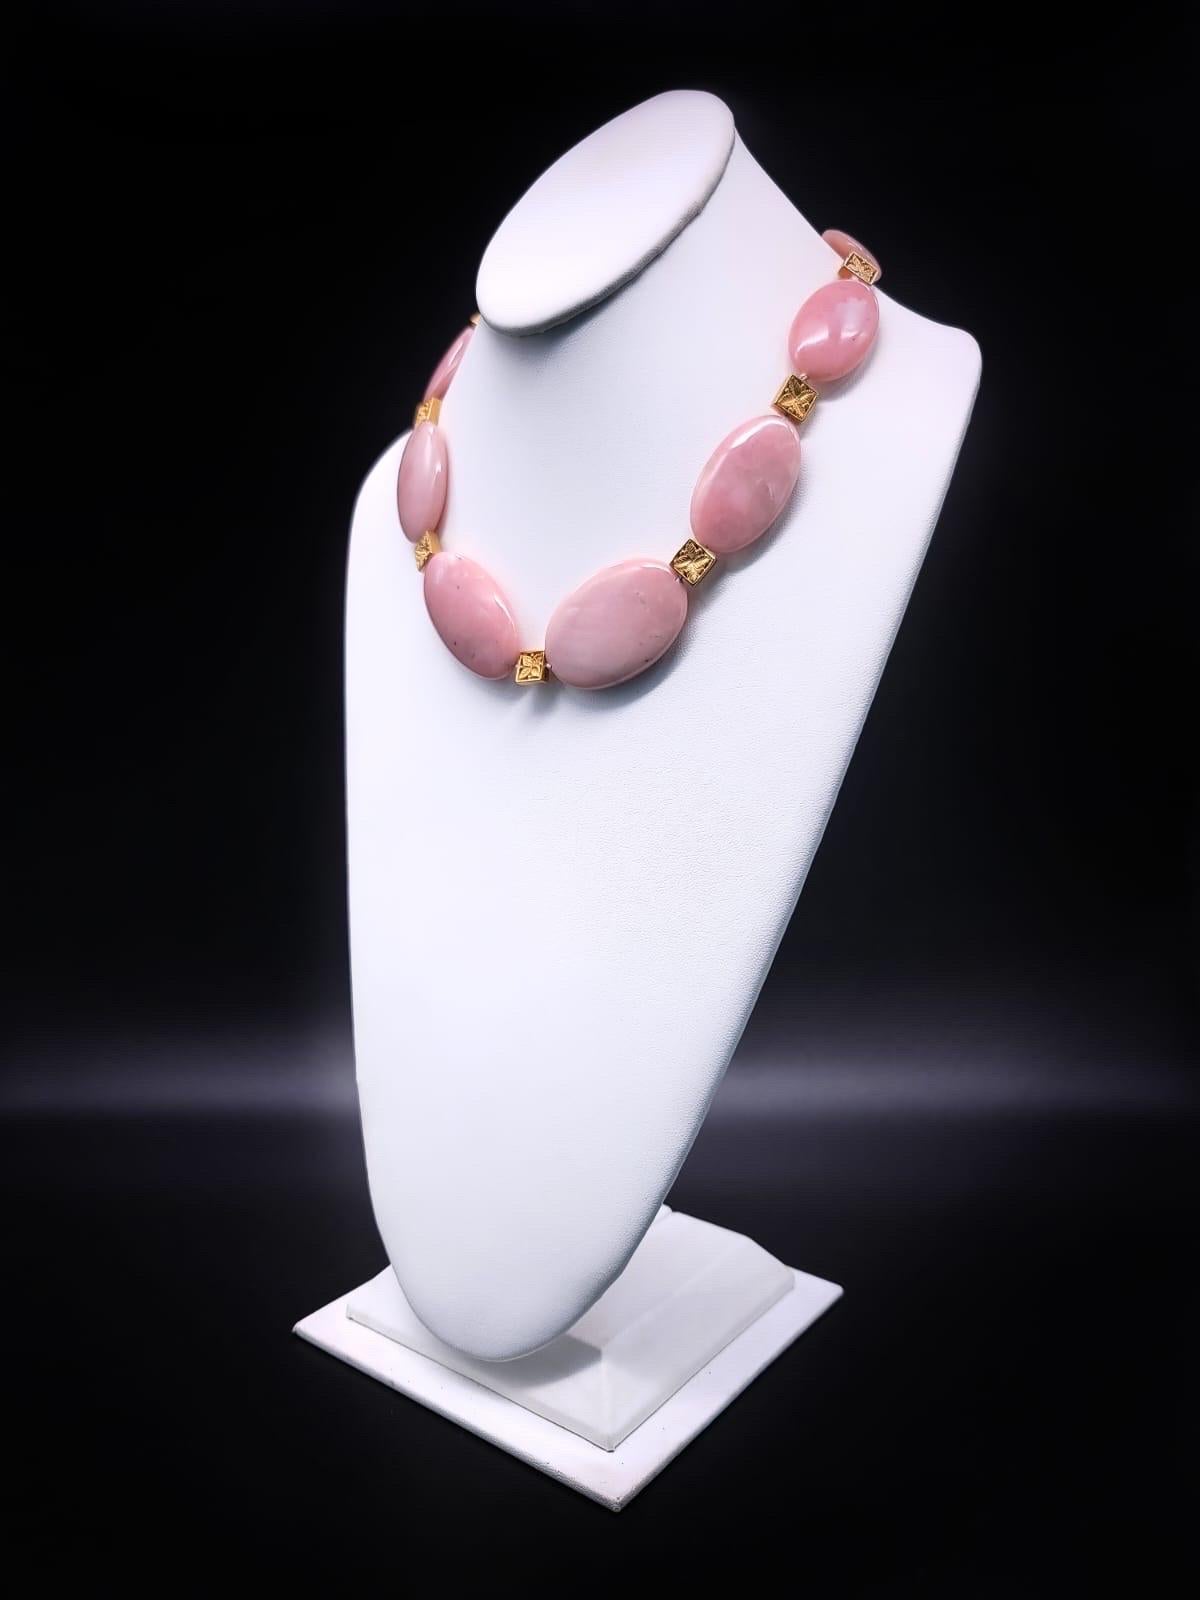 Einzigartig

Gönnen Sie sich die atemberaubende Anziehungskraft eines wahrhaft einzigartigen Accessoires mit unserer polierten ovalen Halskette aus rosa peruanischem Opal. Jede Opalperle hat einen bezaubernden rotbraunen Farbton, der an die